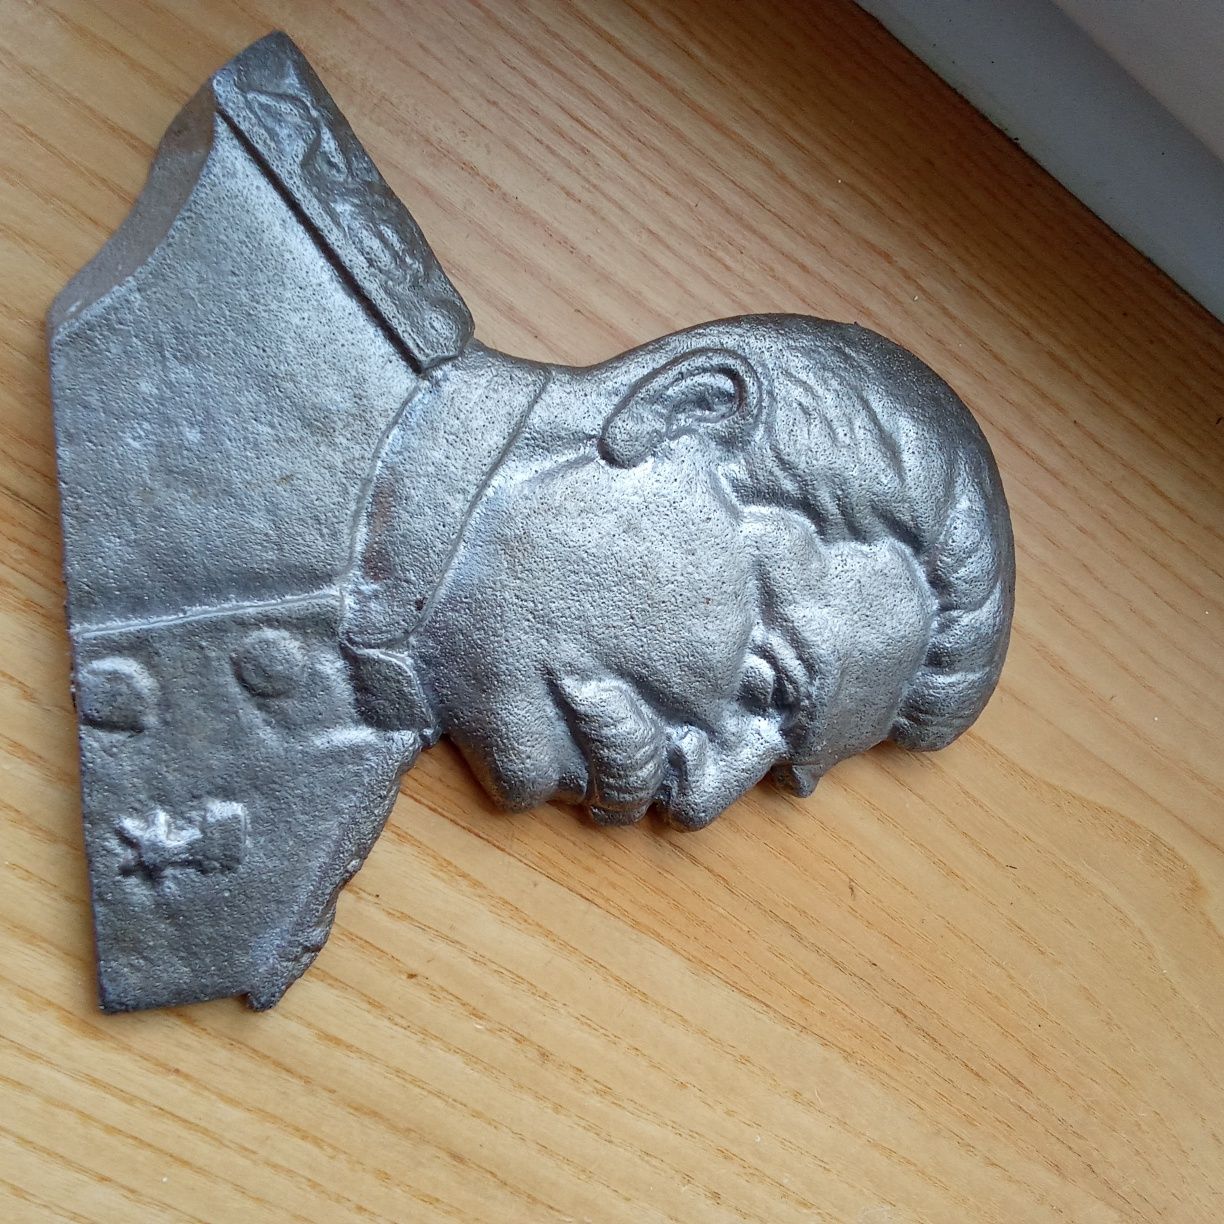 płaskorzeźba przedstawiająca radzieckiego metalowego dyktatora Stalina